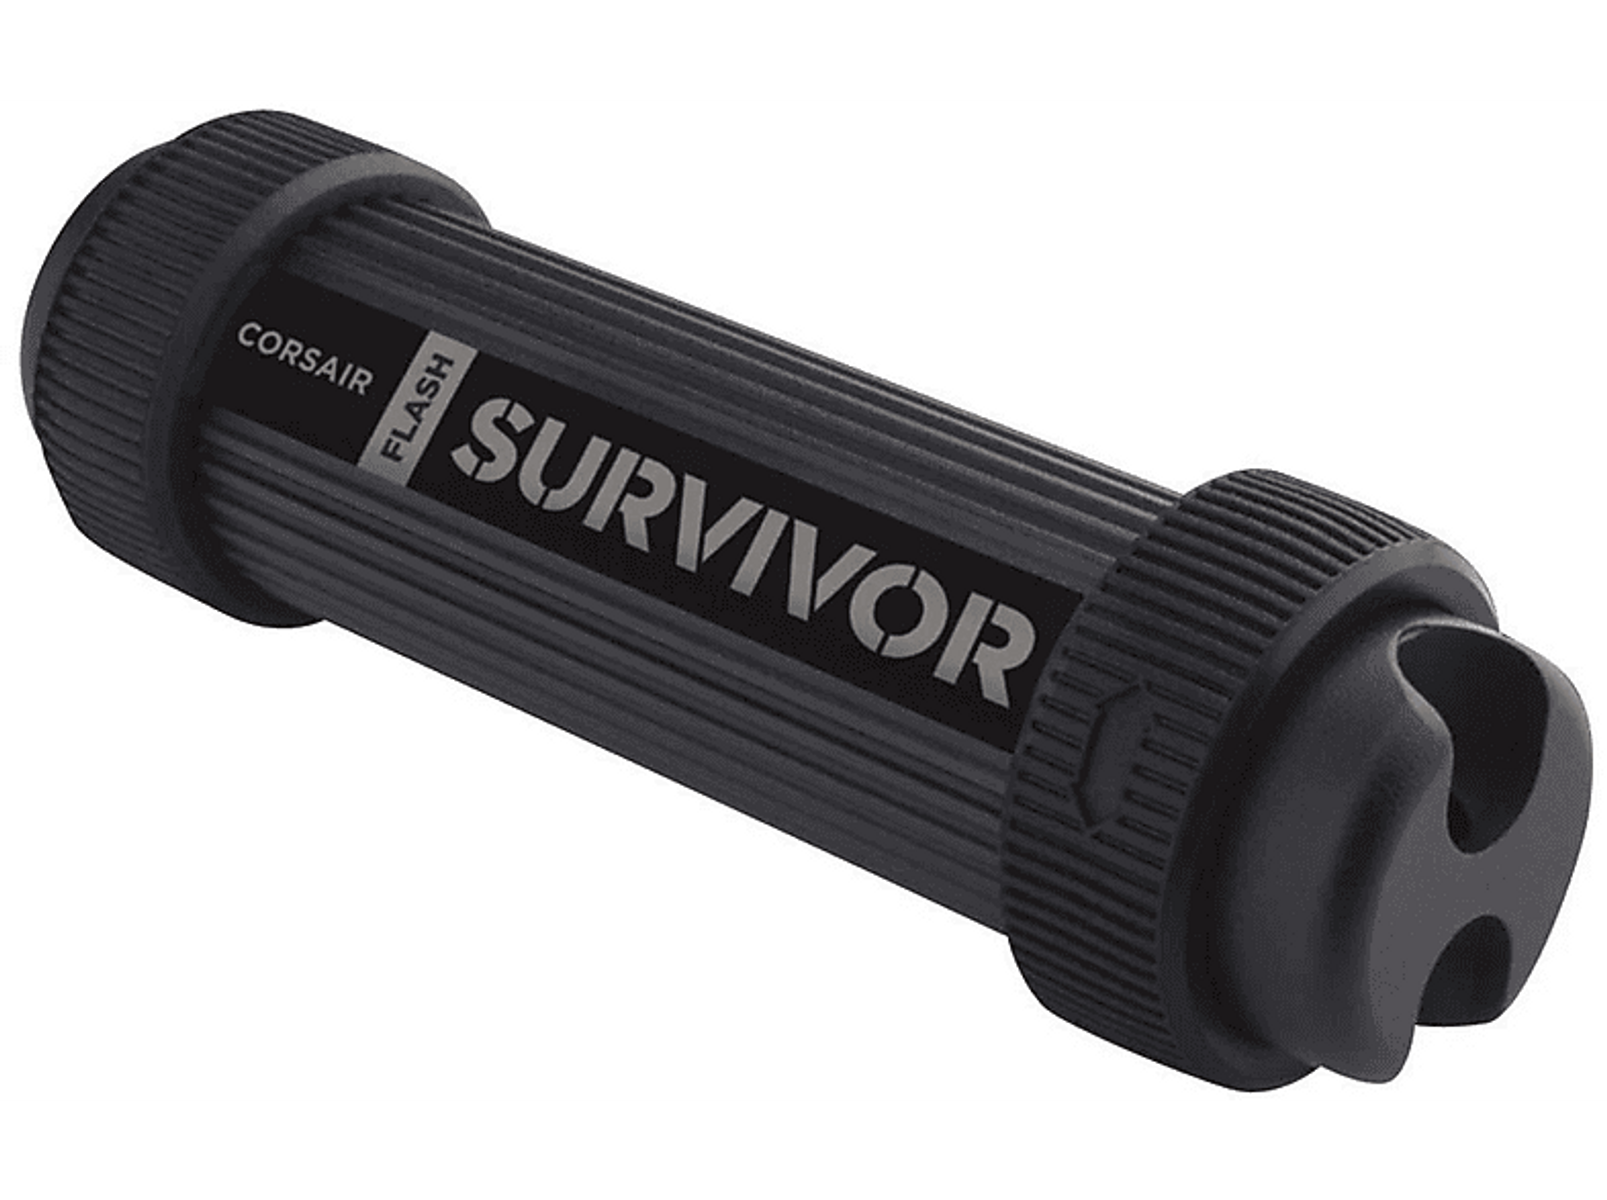 CORSAIR Survivor Stealth TB) (Schwarz, USB-Flash-Laufwerk 1